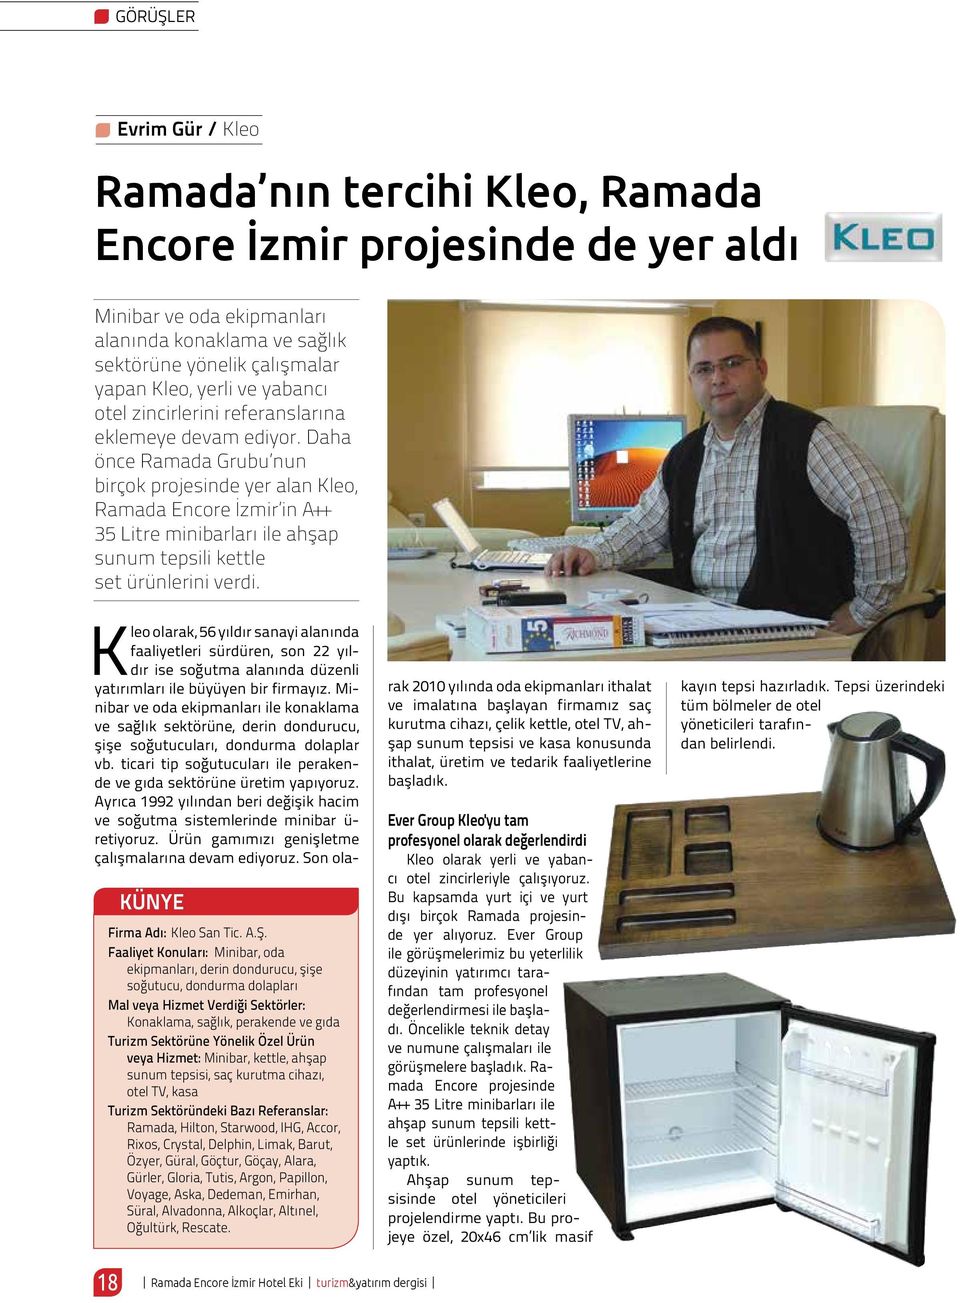 Daha önce Ramada Grubu nun birçok projesinde yer alan Kleo, Ramada Encore İzmir in A++ 35 Litre minibarları ile ahşap sunum tepsili kettle set ürünlerini verdi. KÜNYE Firma Adı: Kleo San Tic. A.Ş.